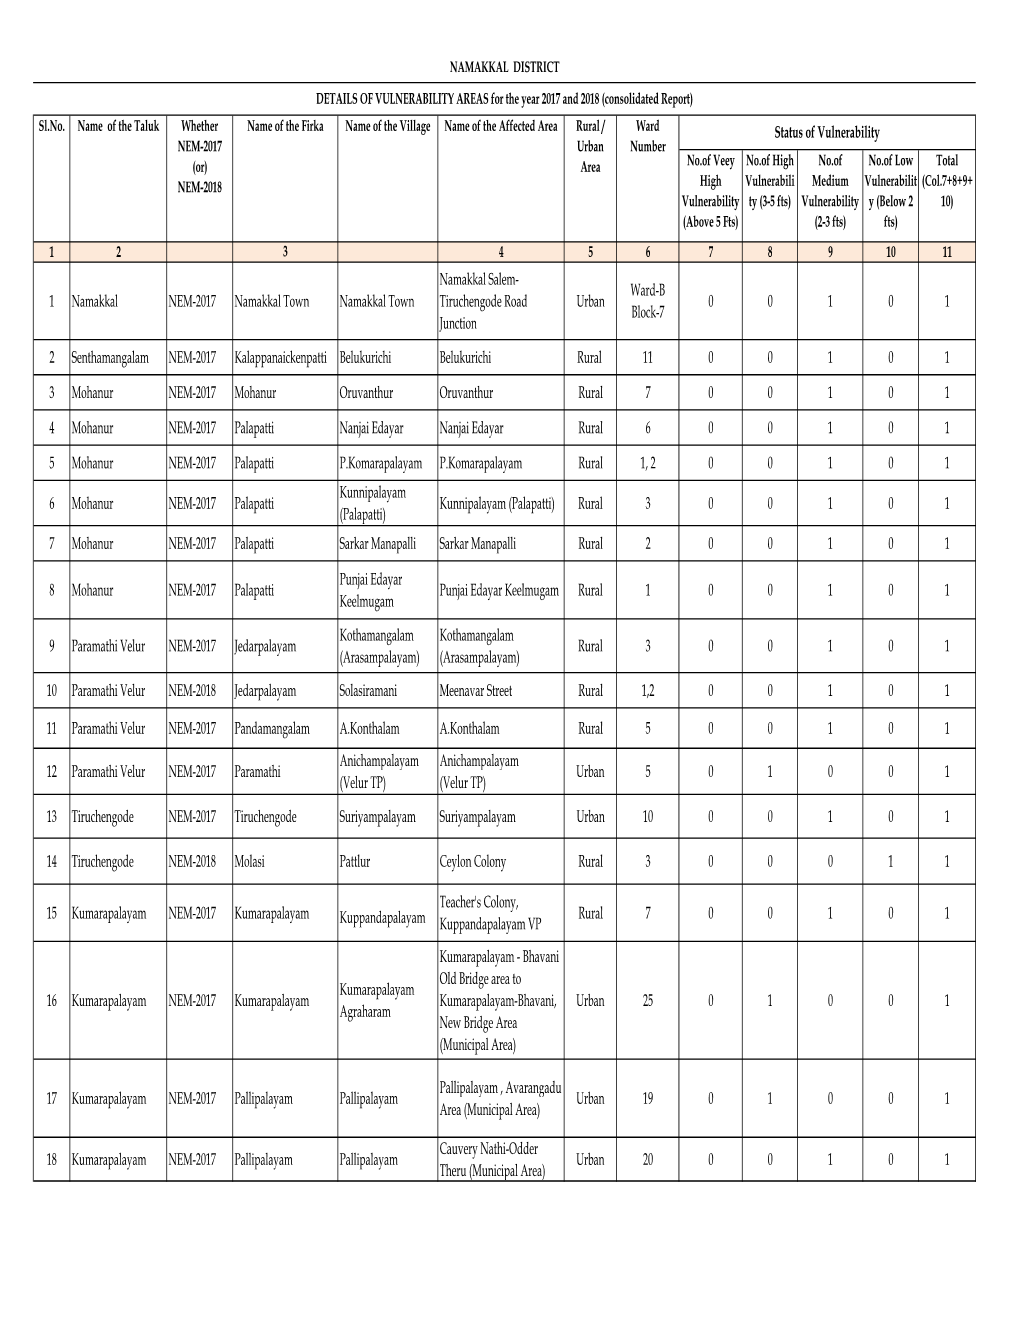 26.09.2019 Namakkal District Vulnerable List to ACSCRA